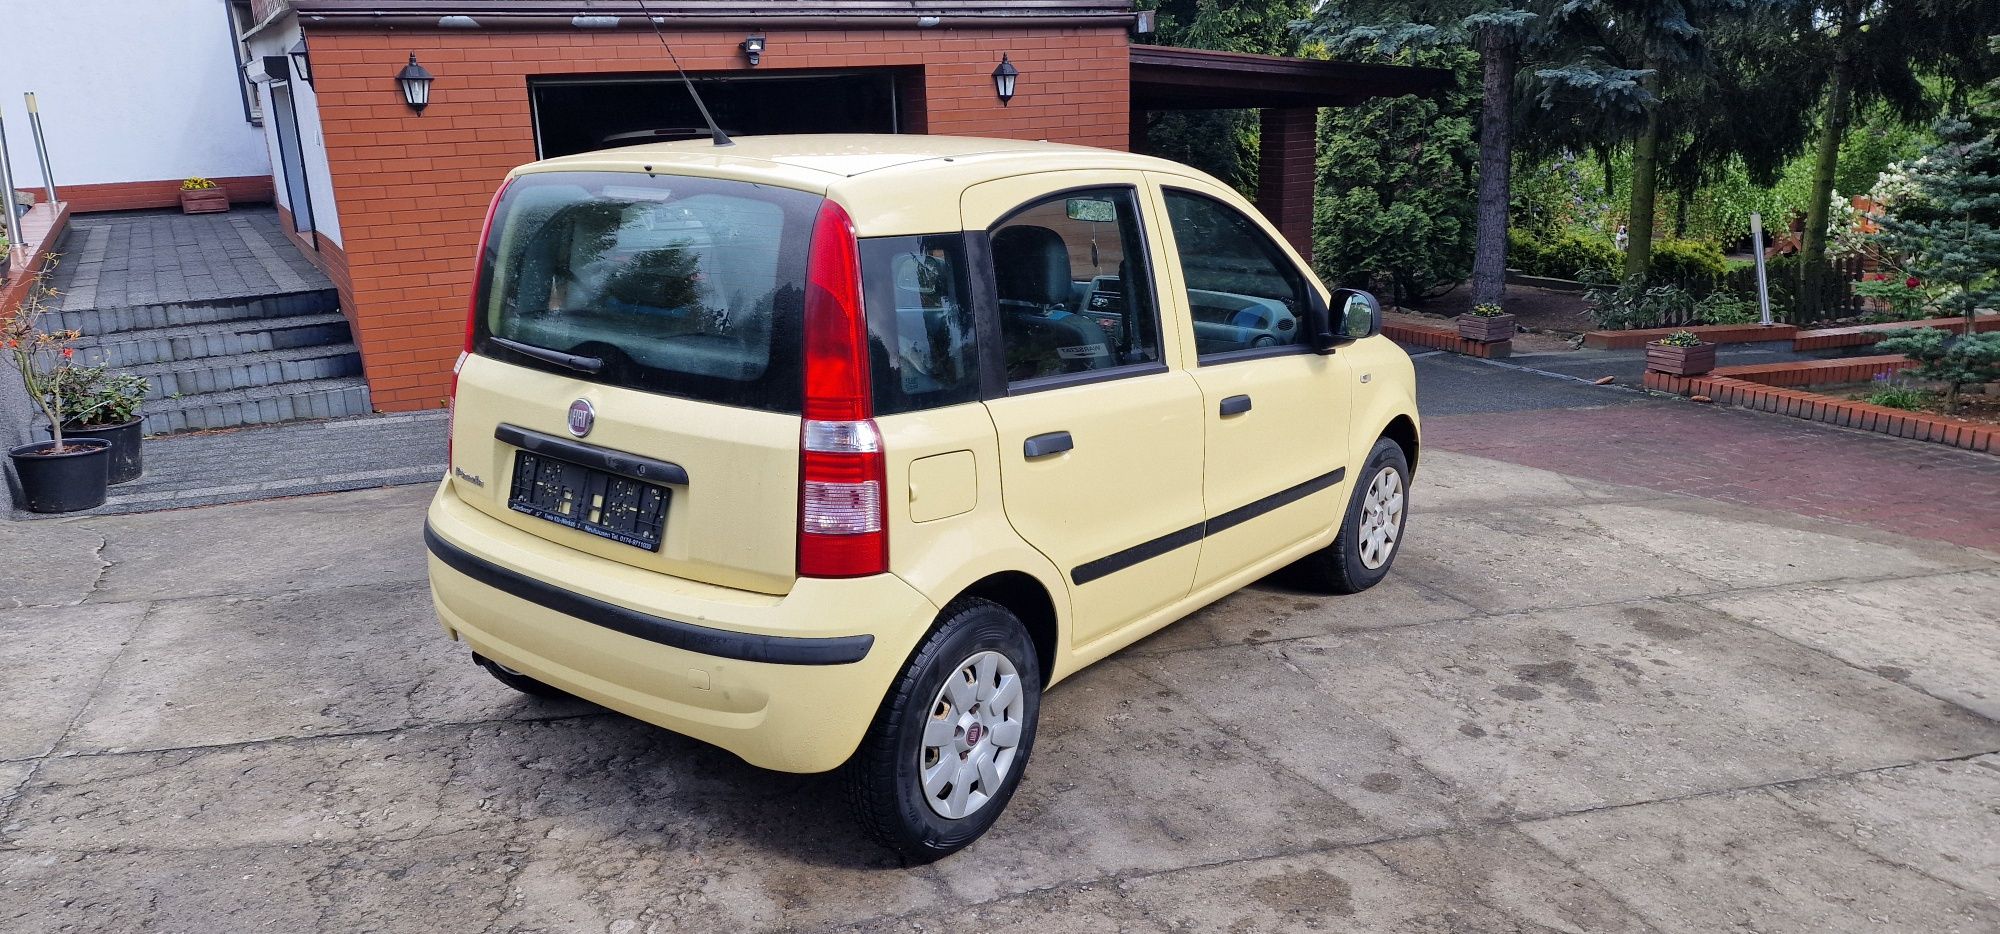 Fiat Panda 2010r przygotowany do rejestracji